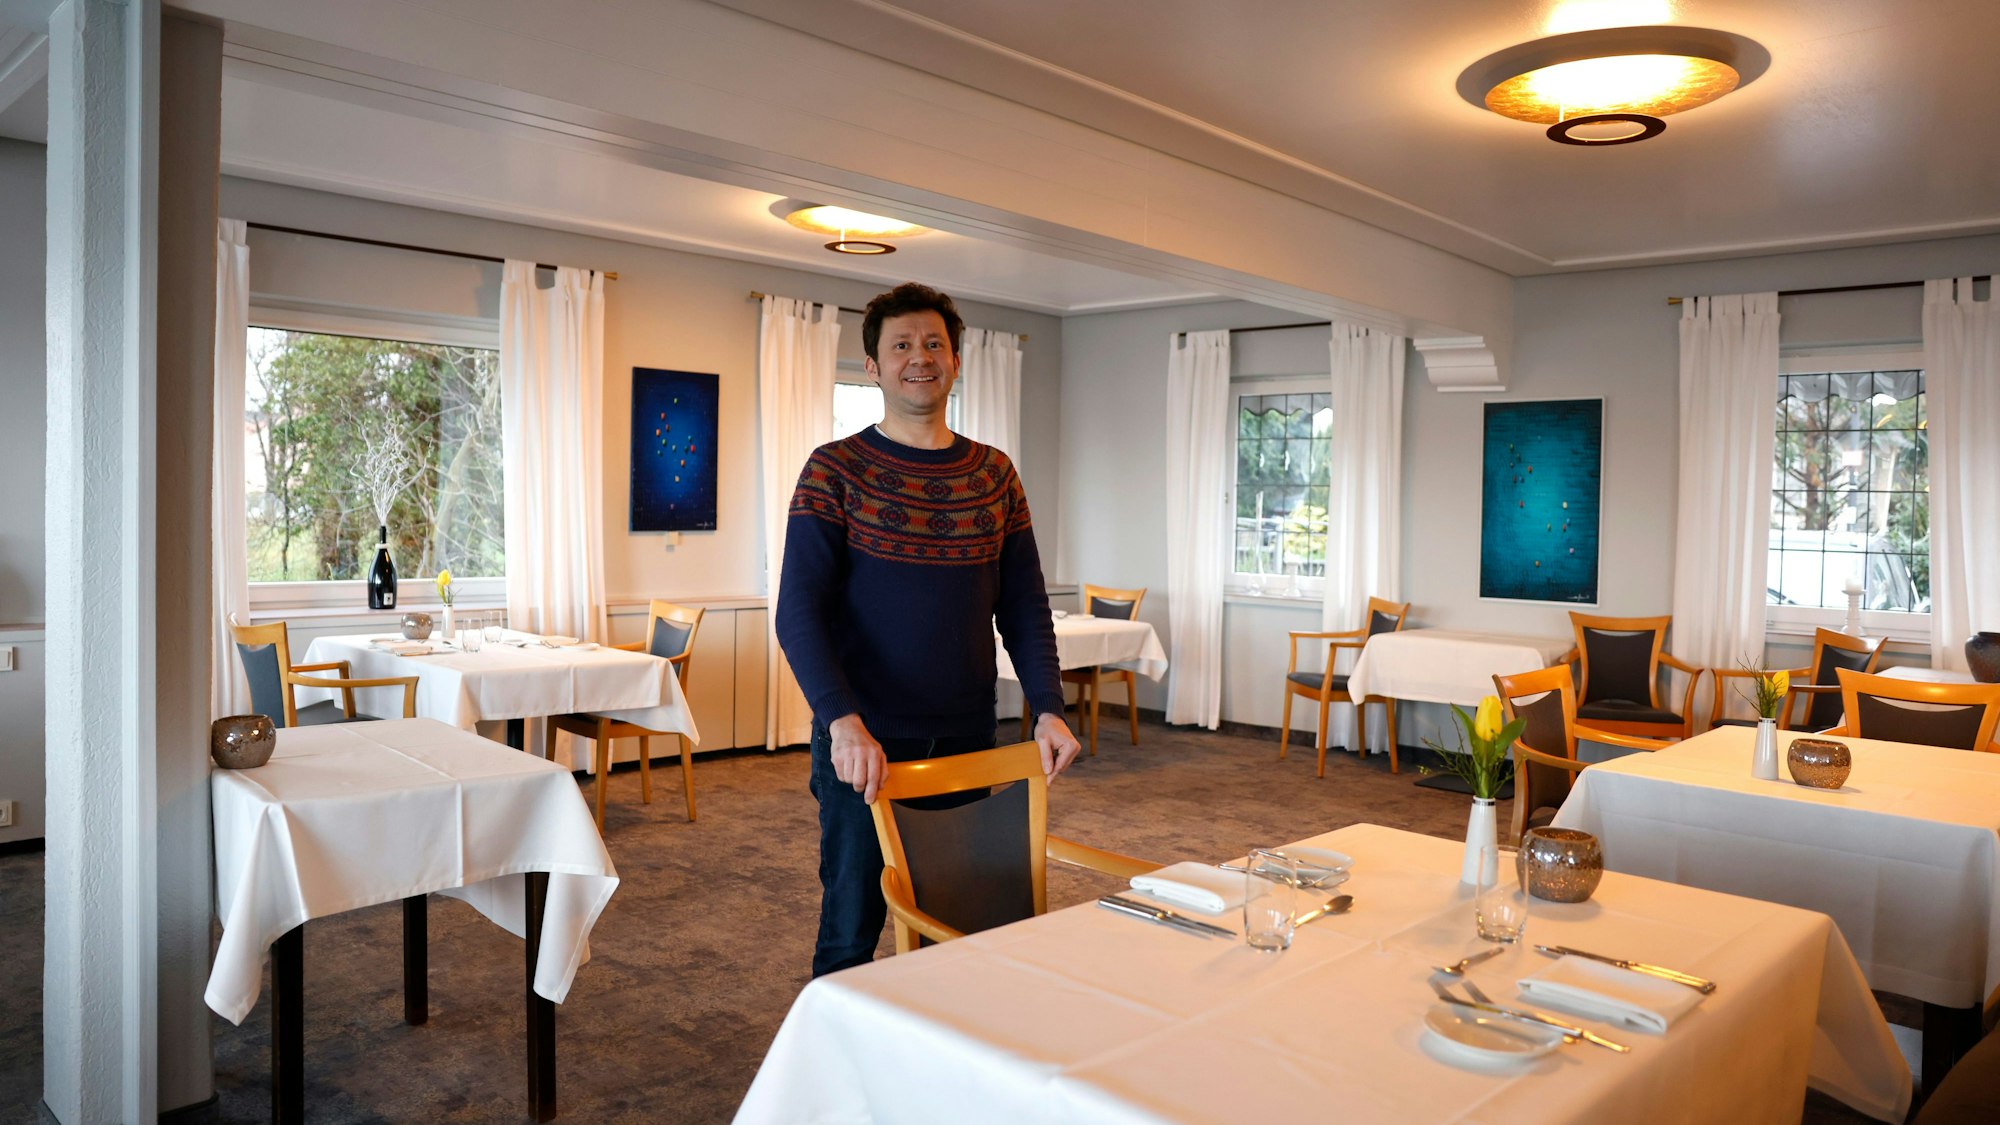 Thomas Lösche steht in seinem Sternerestaurant "Zur Tant" in Köln. Die Einrichtung ist schlicht und dominiert von der Farbe Weiß.